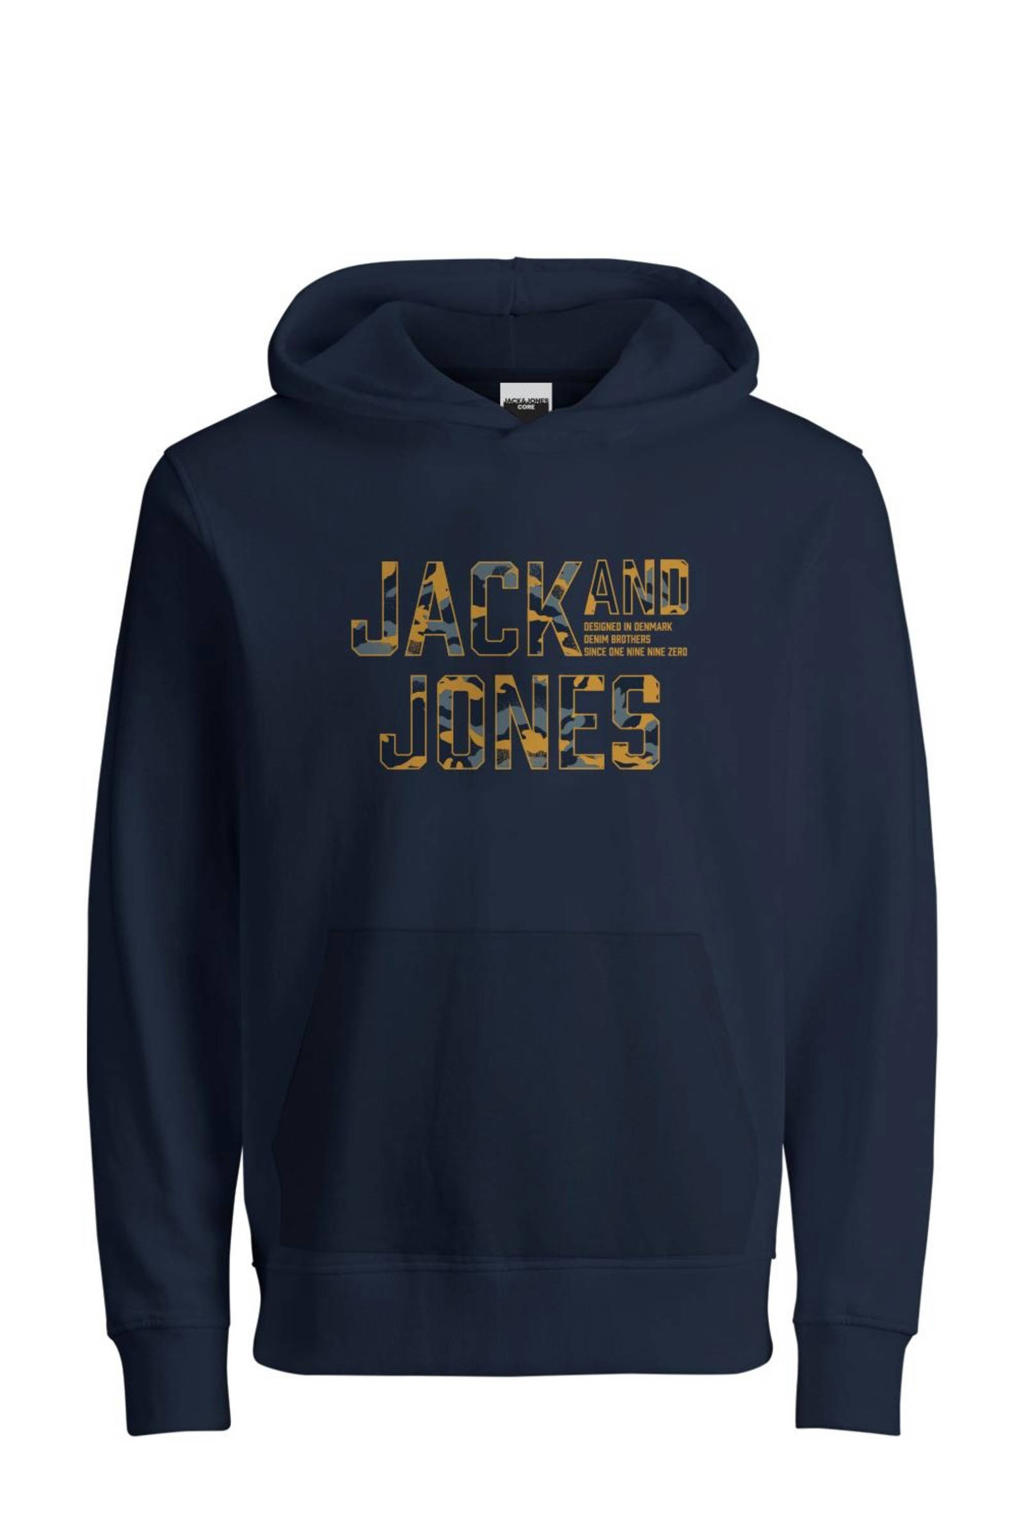 Donkerblauwe jongens JACK & JONES hoodie van sweat materiaal met logo dessin, lange mouwen en capuchon